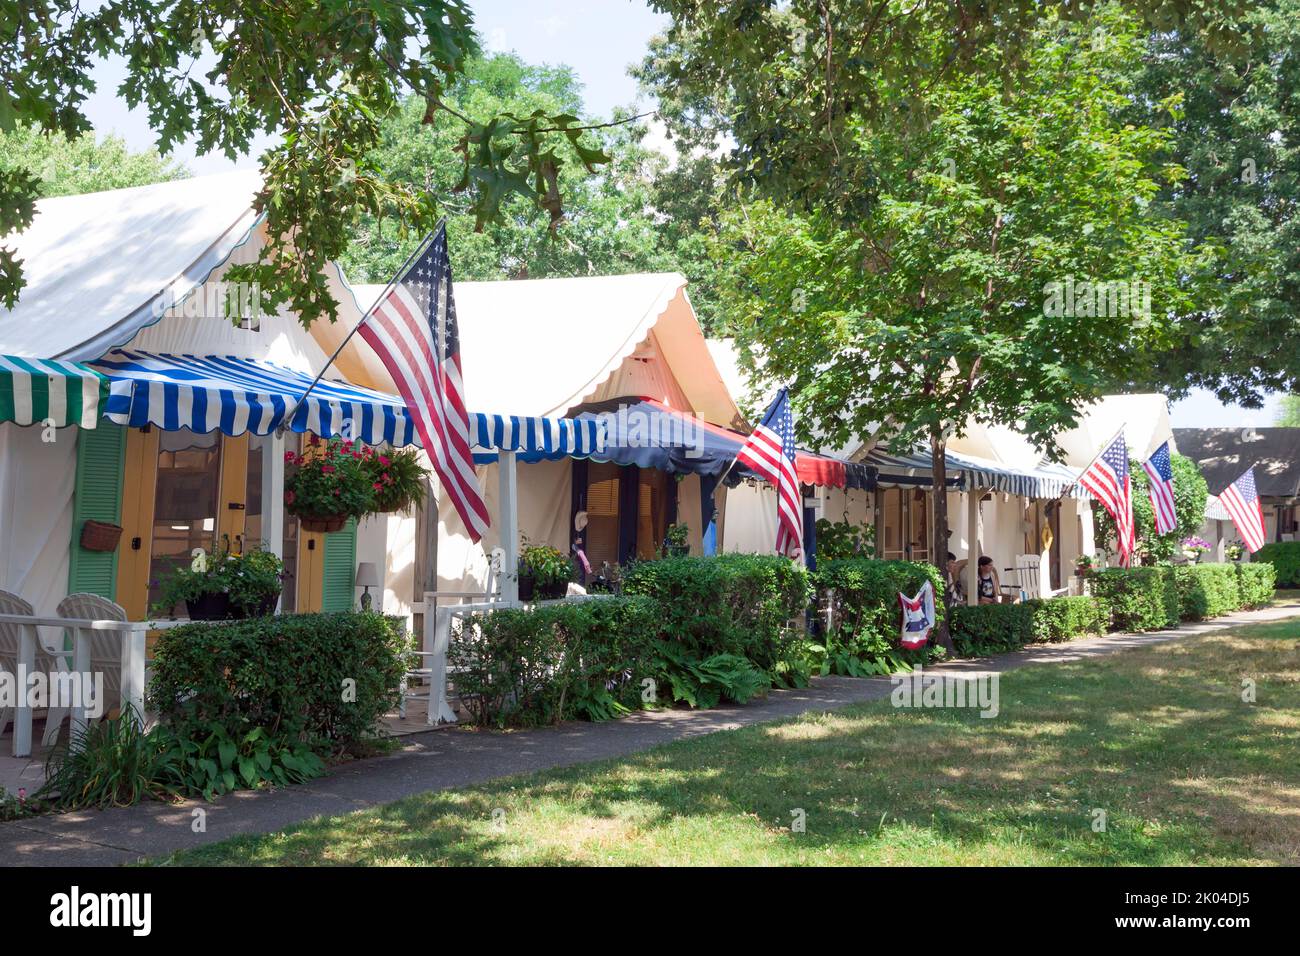 Historisches Ocean Groves Camp Methodist-Sommerzeltviertel an der Küste von New Jersey. Stockfoto